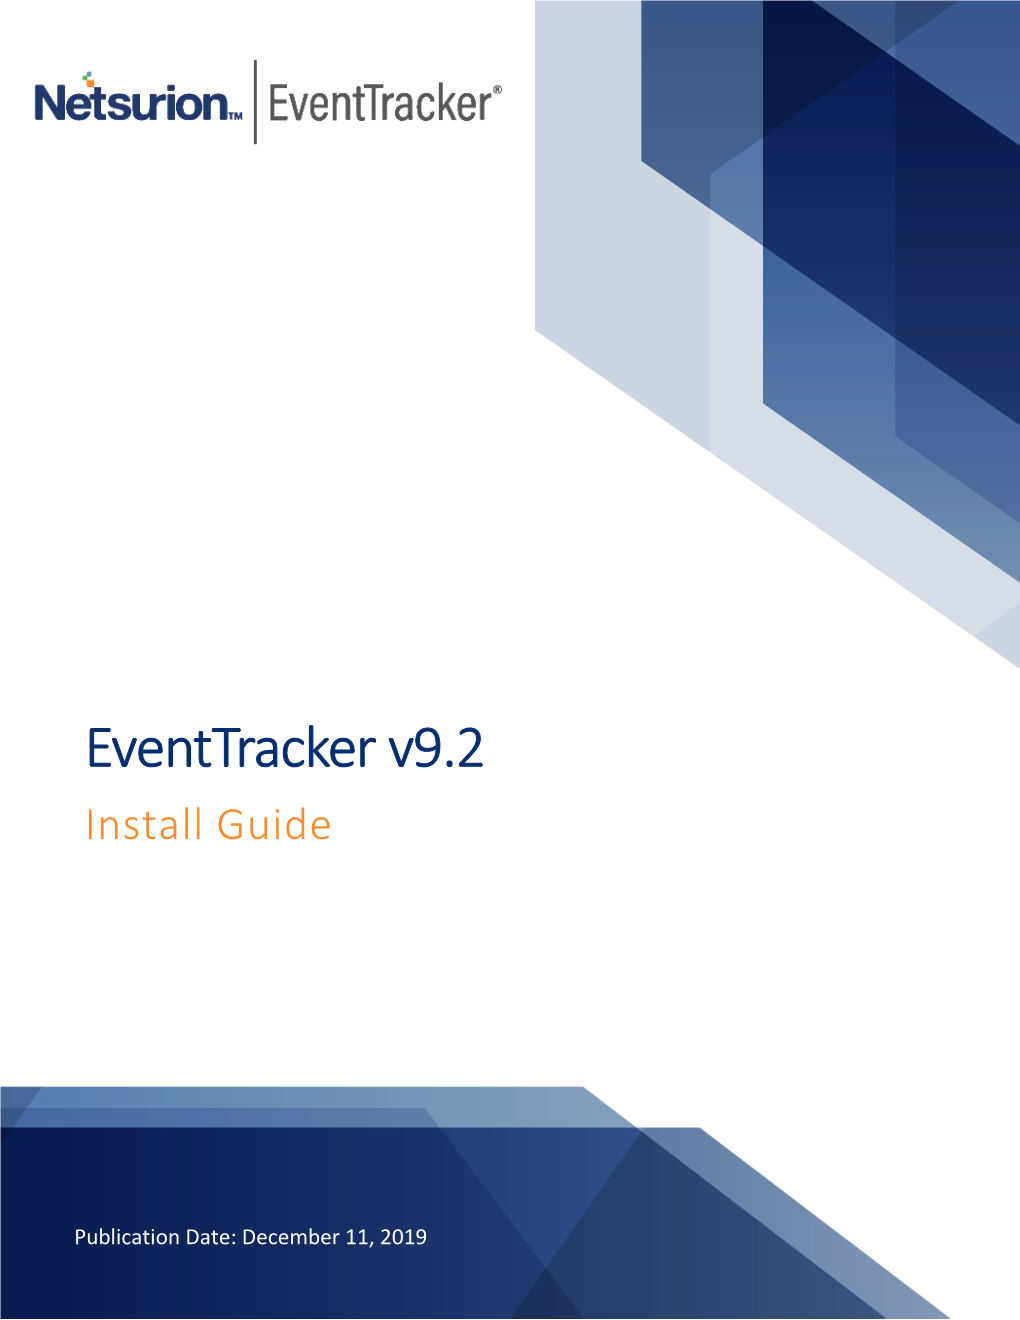 Eventtracker V9.2 Install Guide